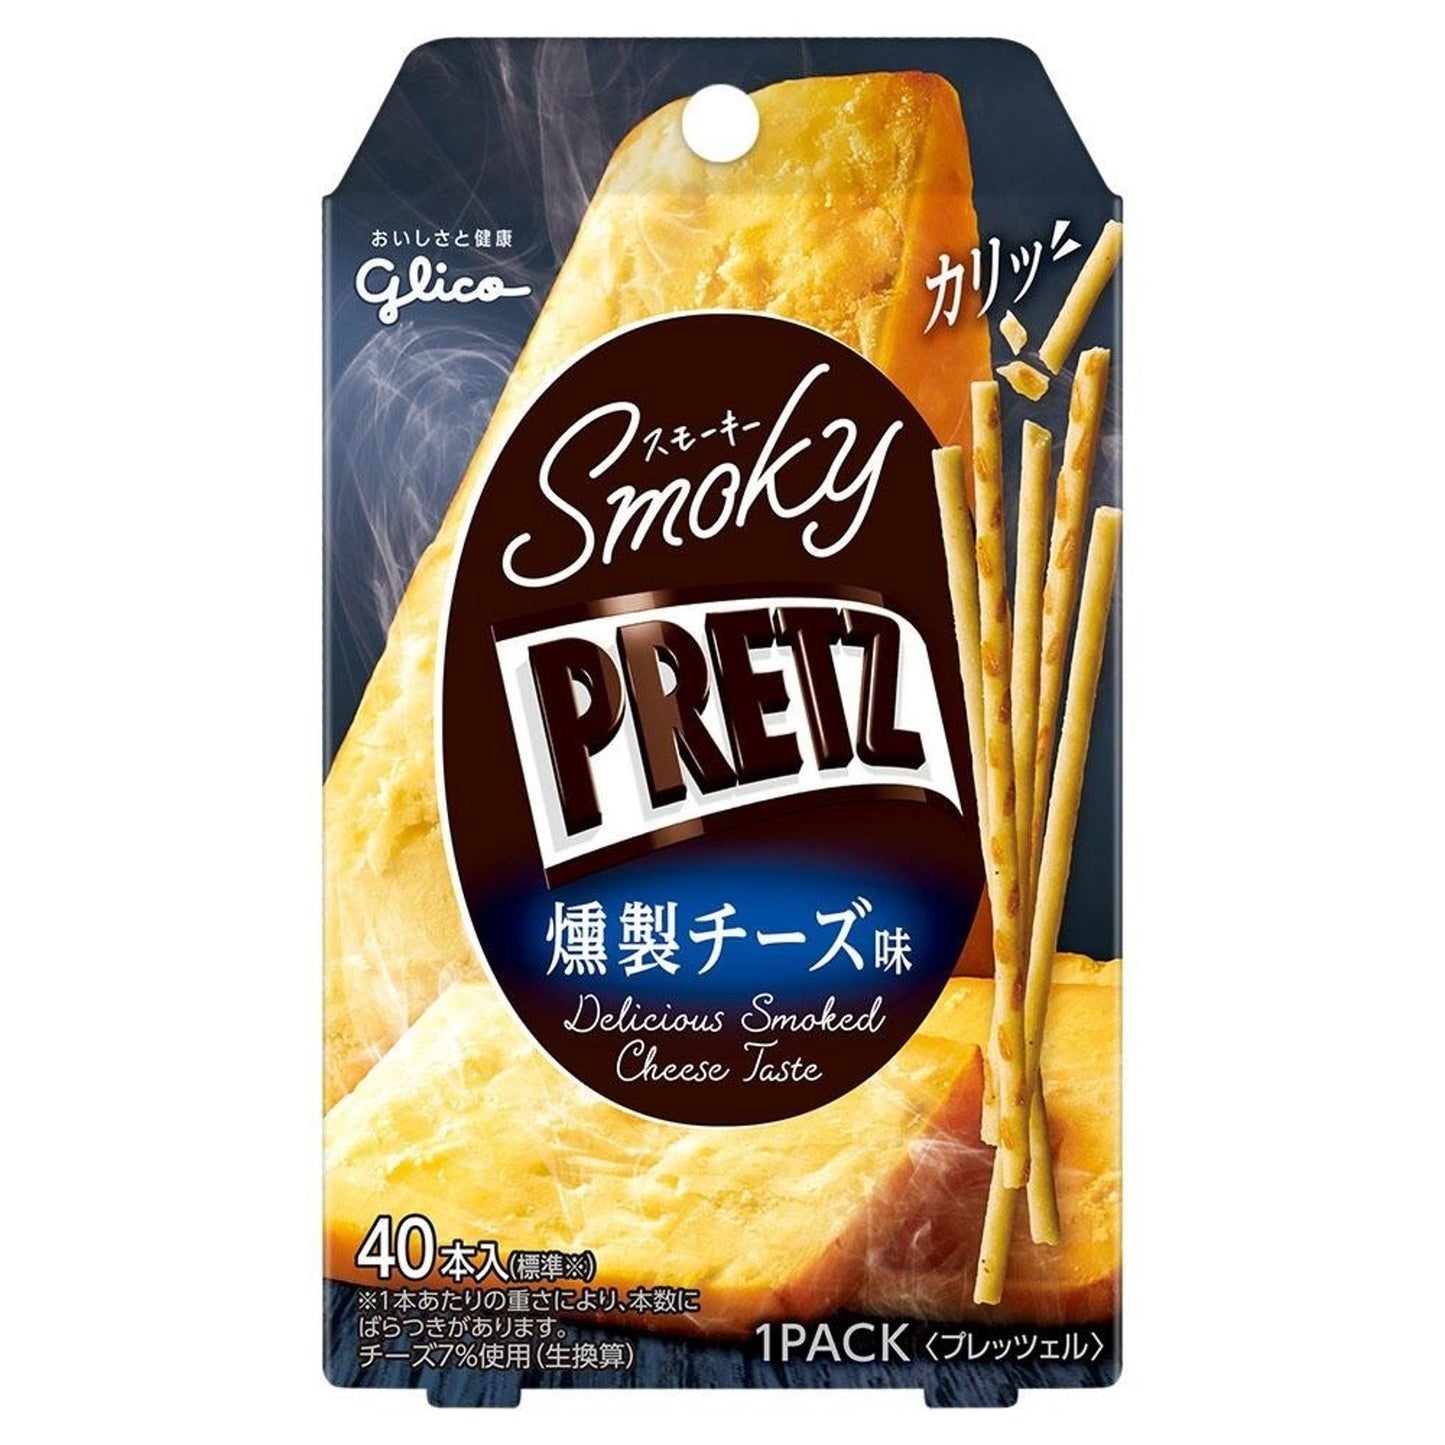 [Glico][Pretz Smoky Plitz Smoked Cheese Flavor]